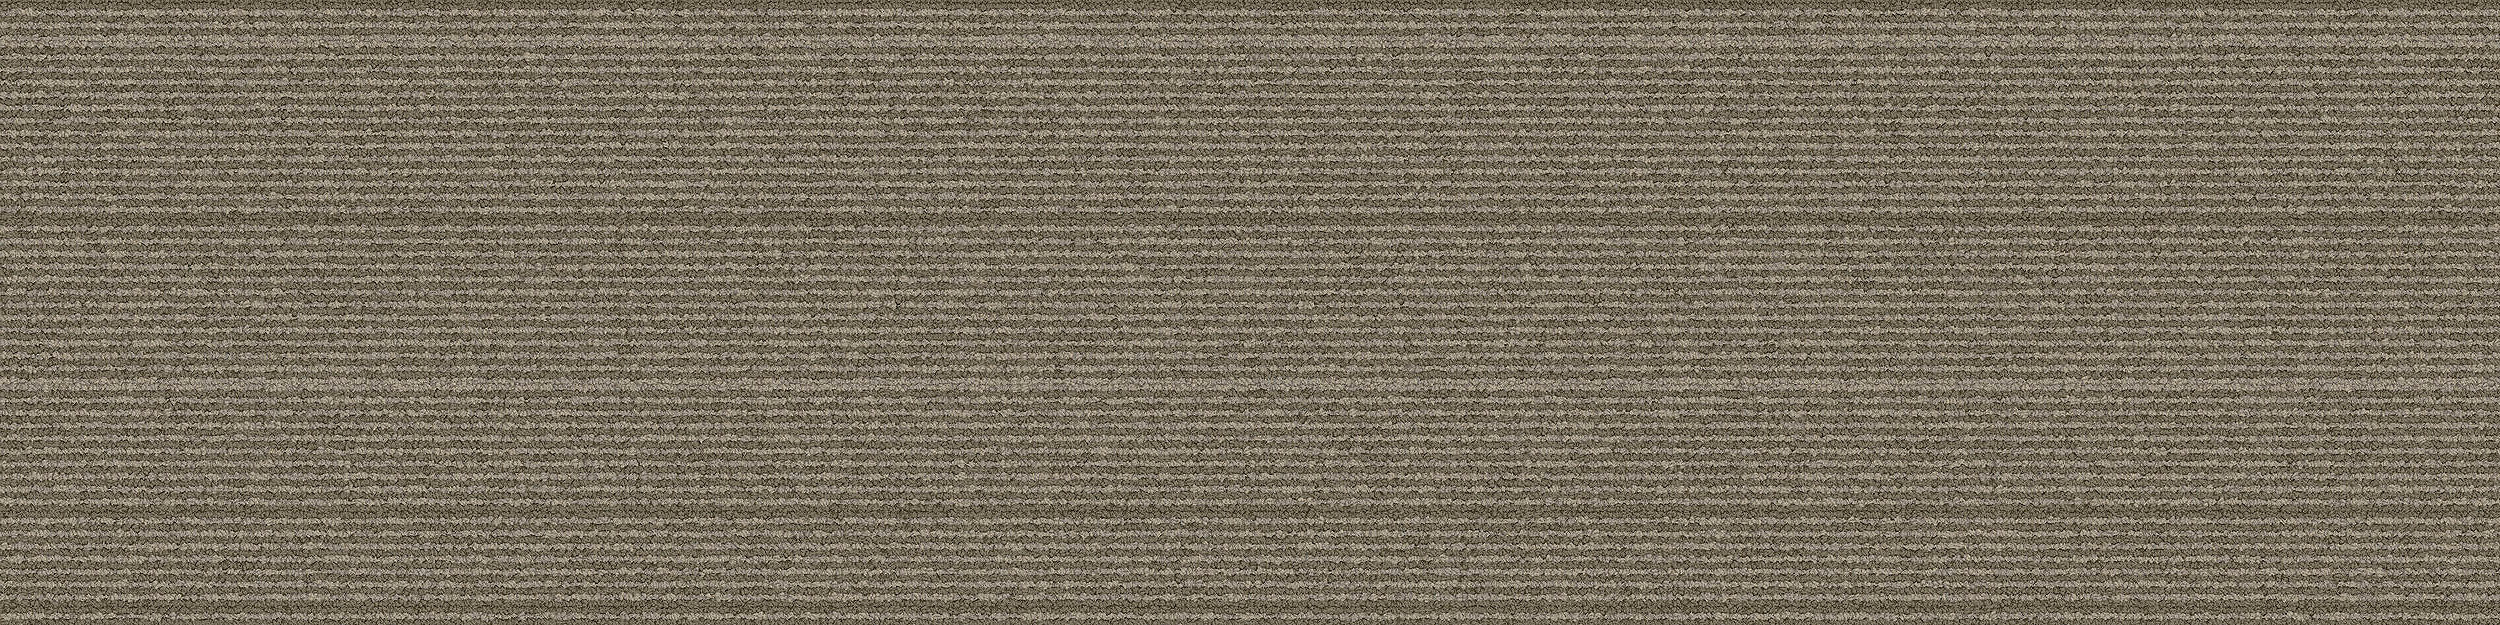 PH211 Carpet Tile In Olive imagen número 9